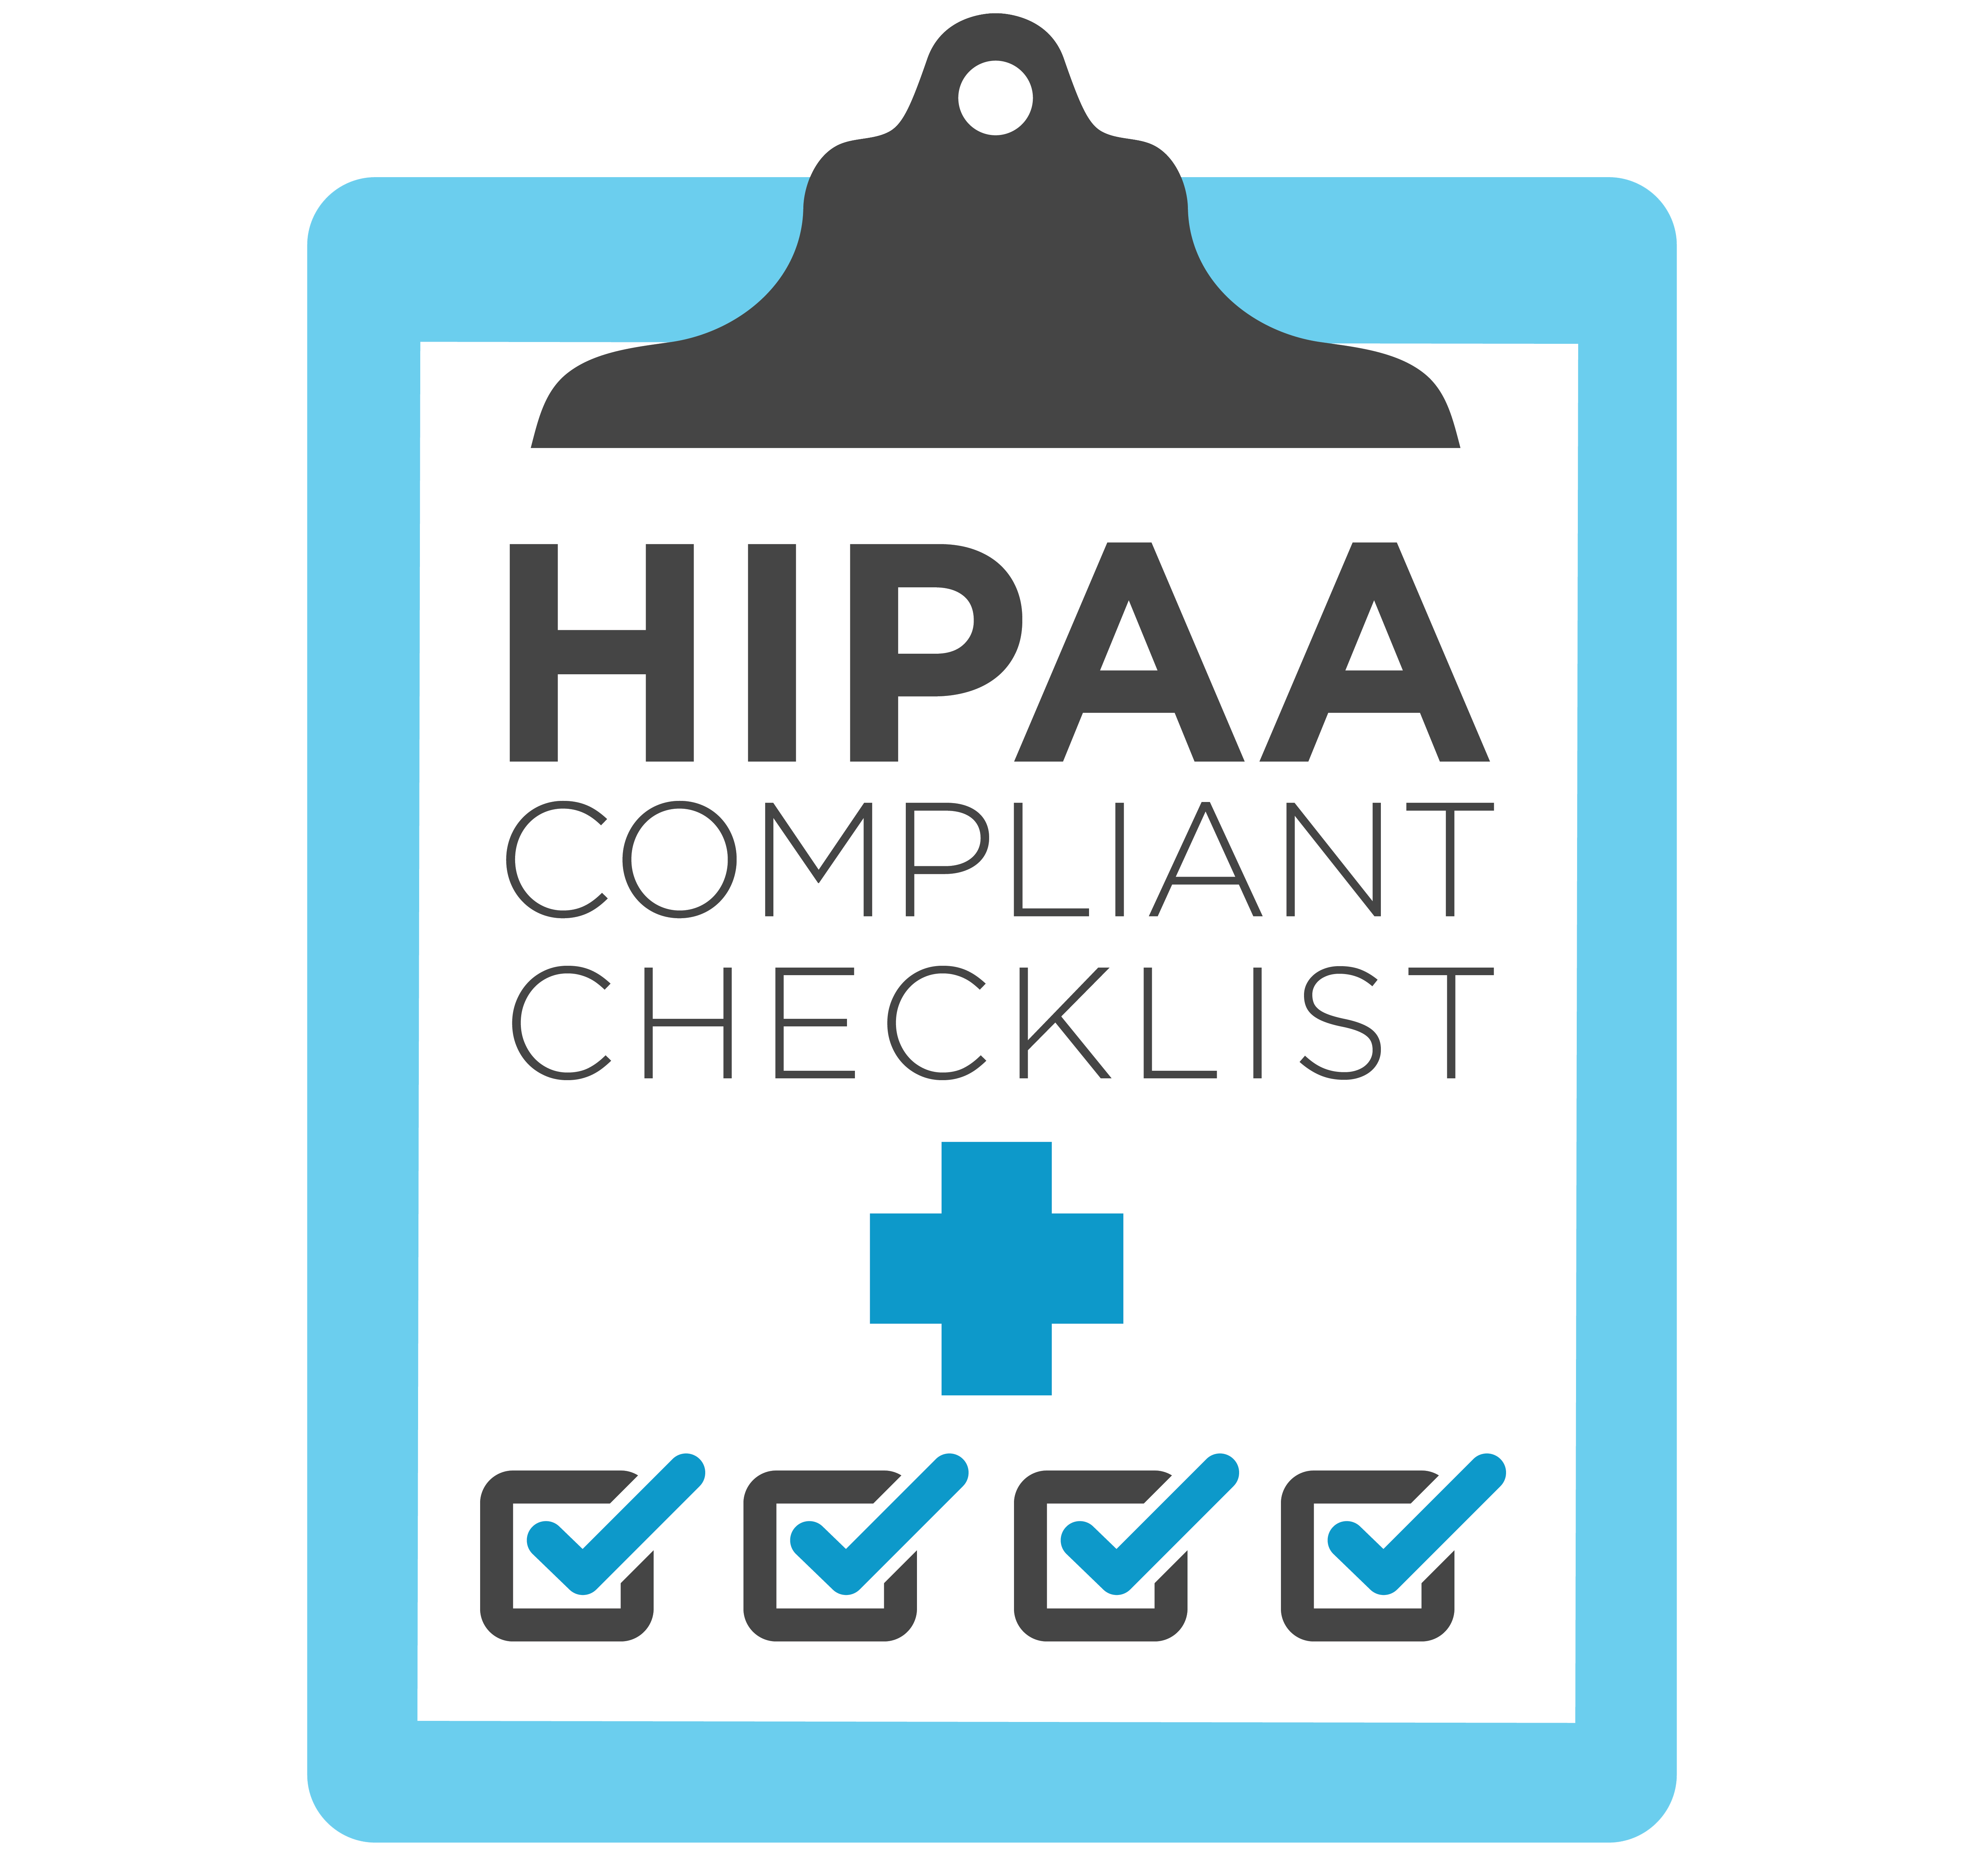 HIPAA Checklist